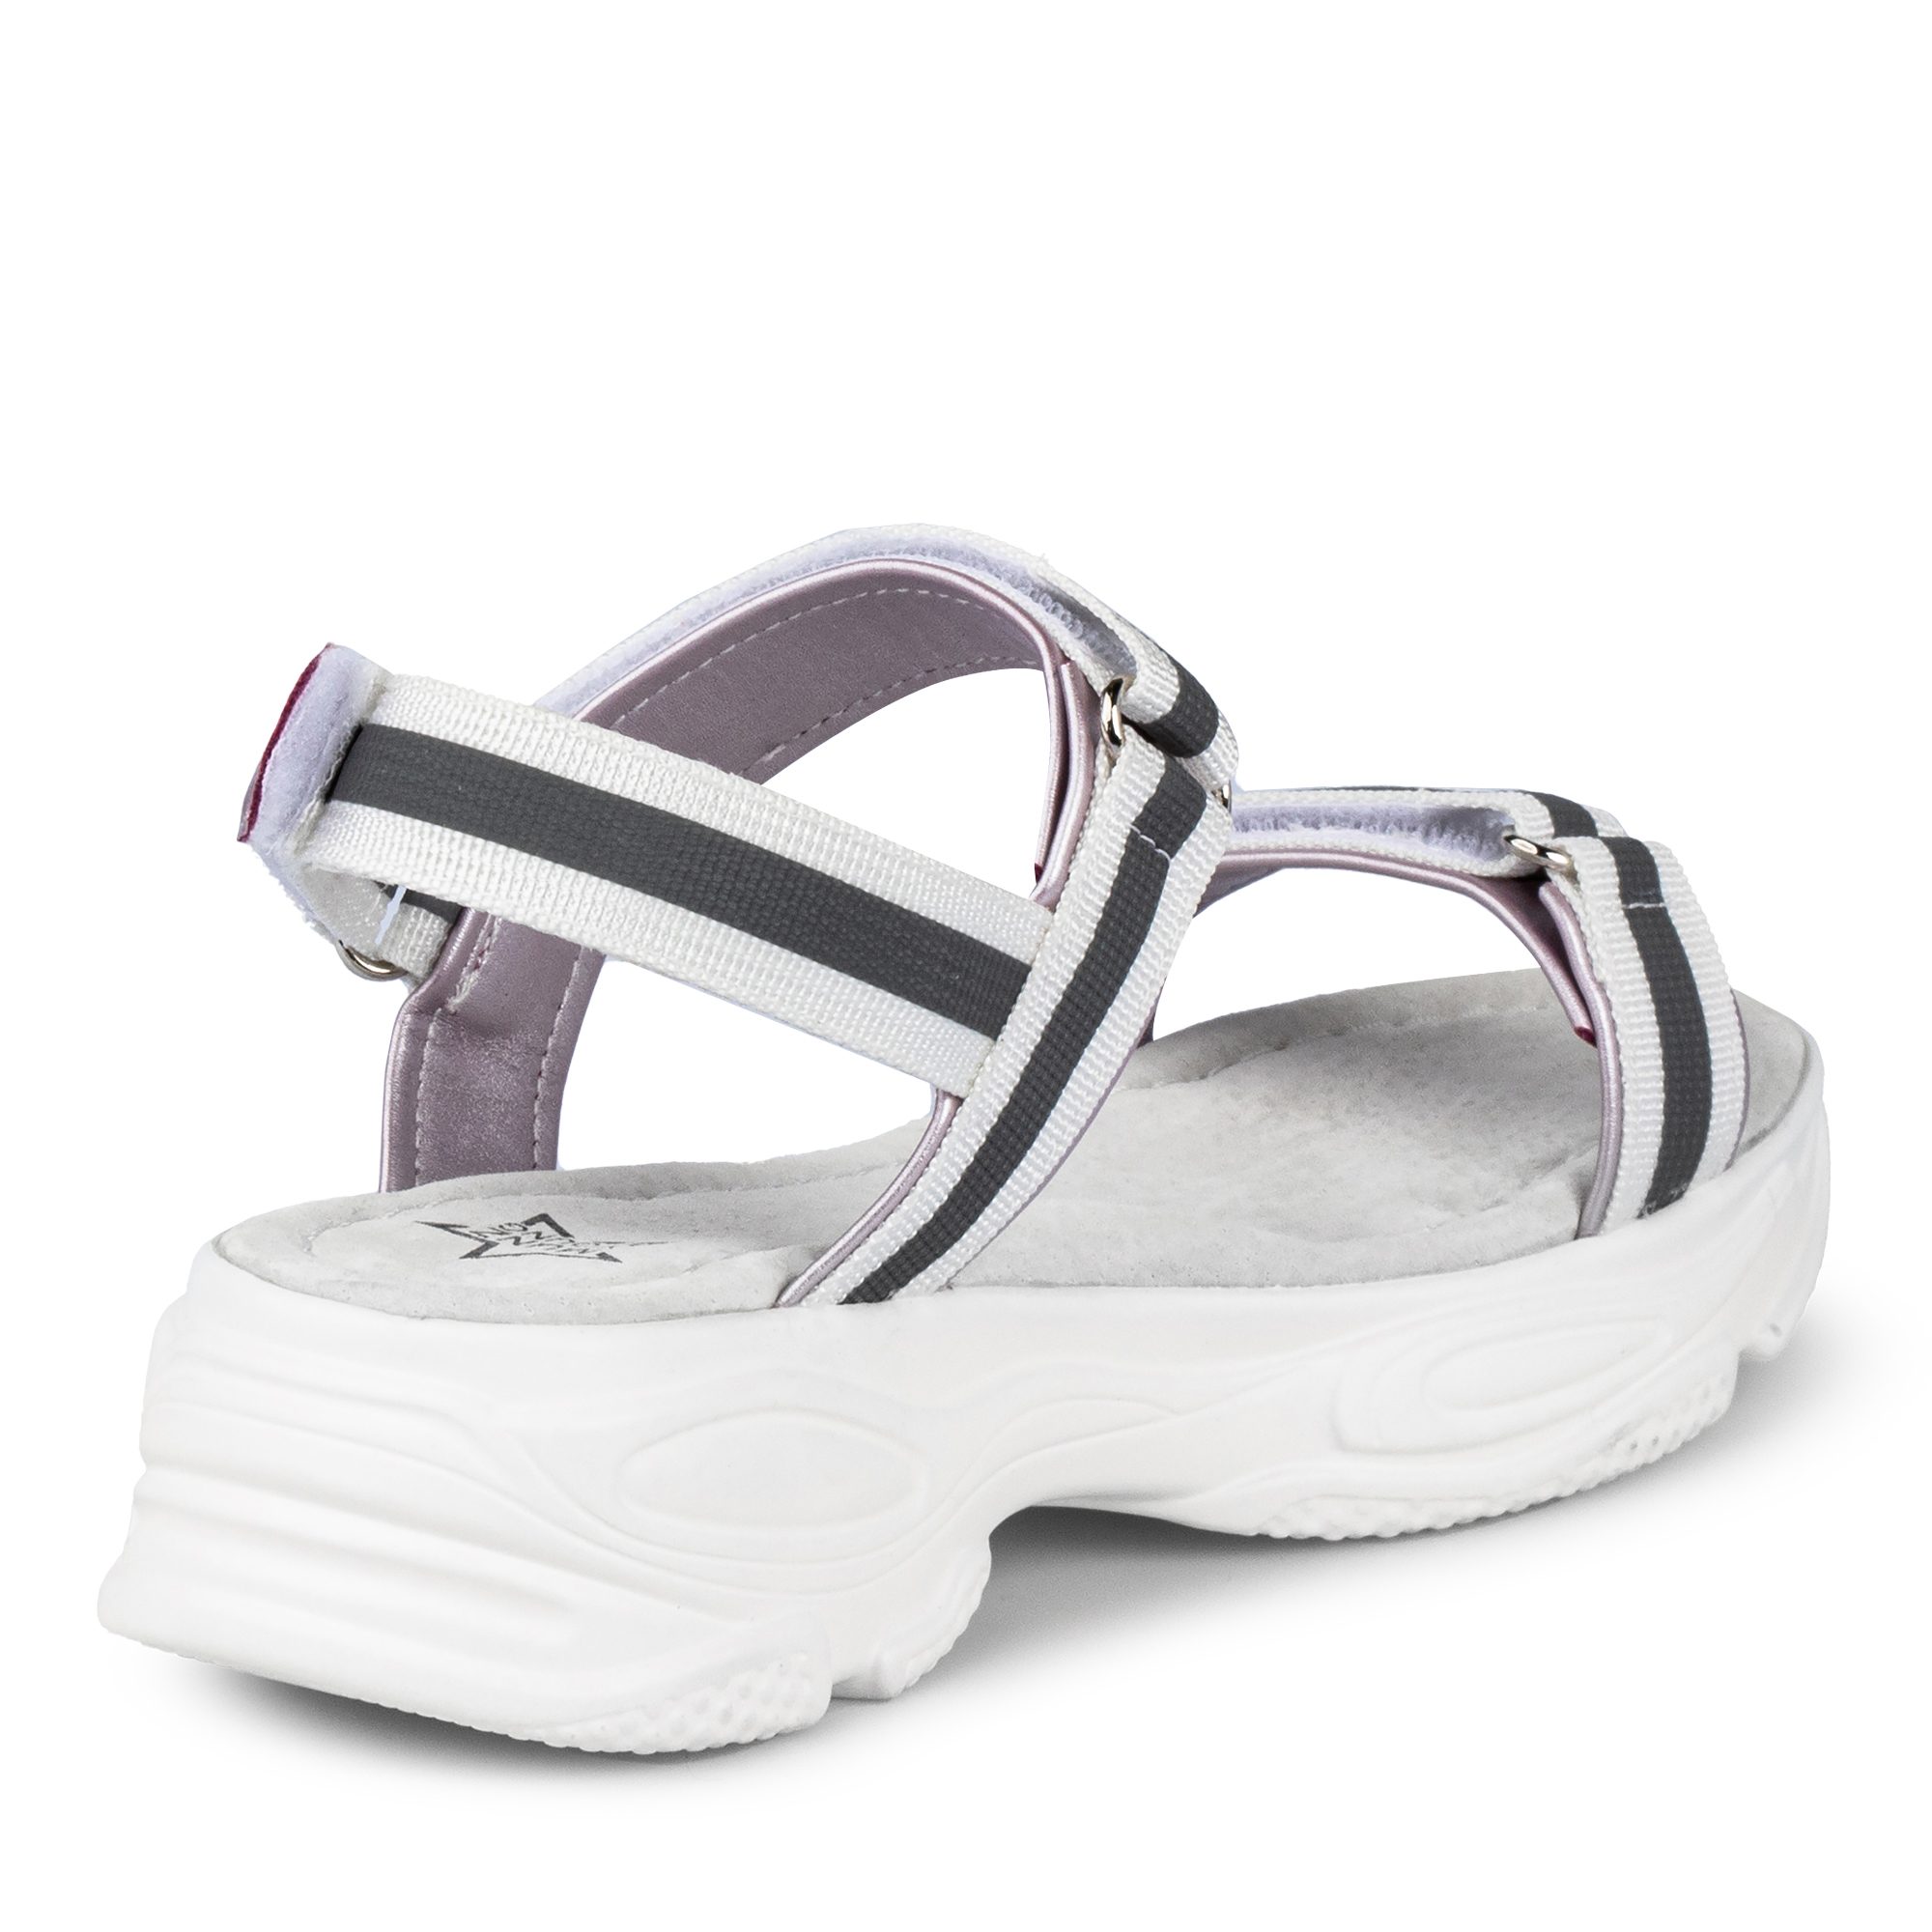 Обувь для девочек MUNZ YOUNG 174-045B-6201, цвет белый, размер 34 - фото 3